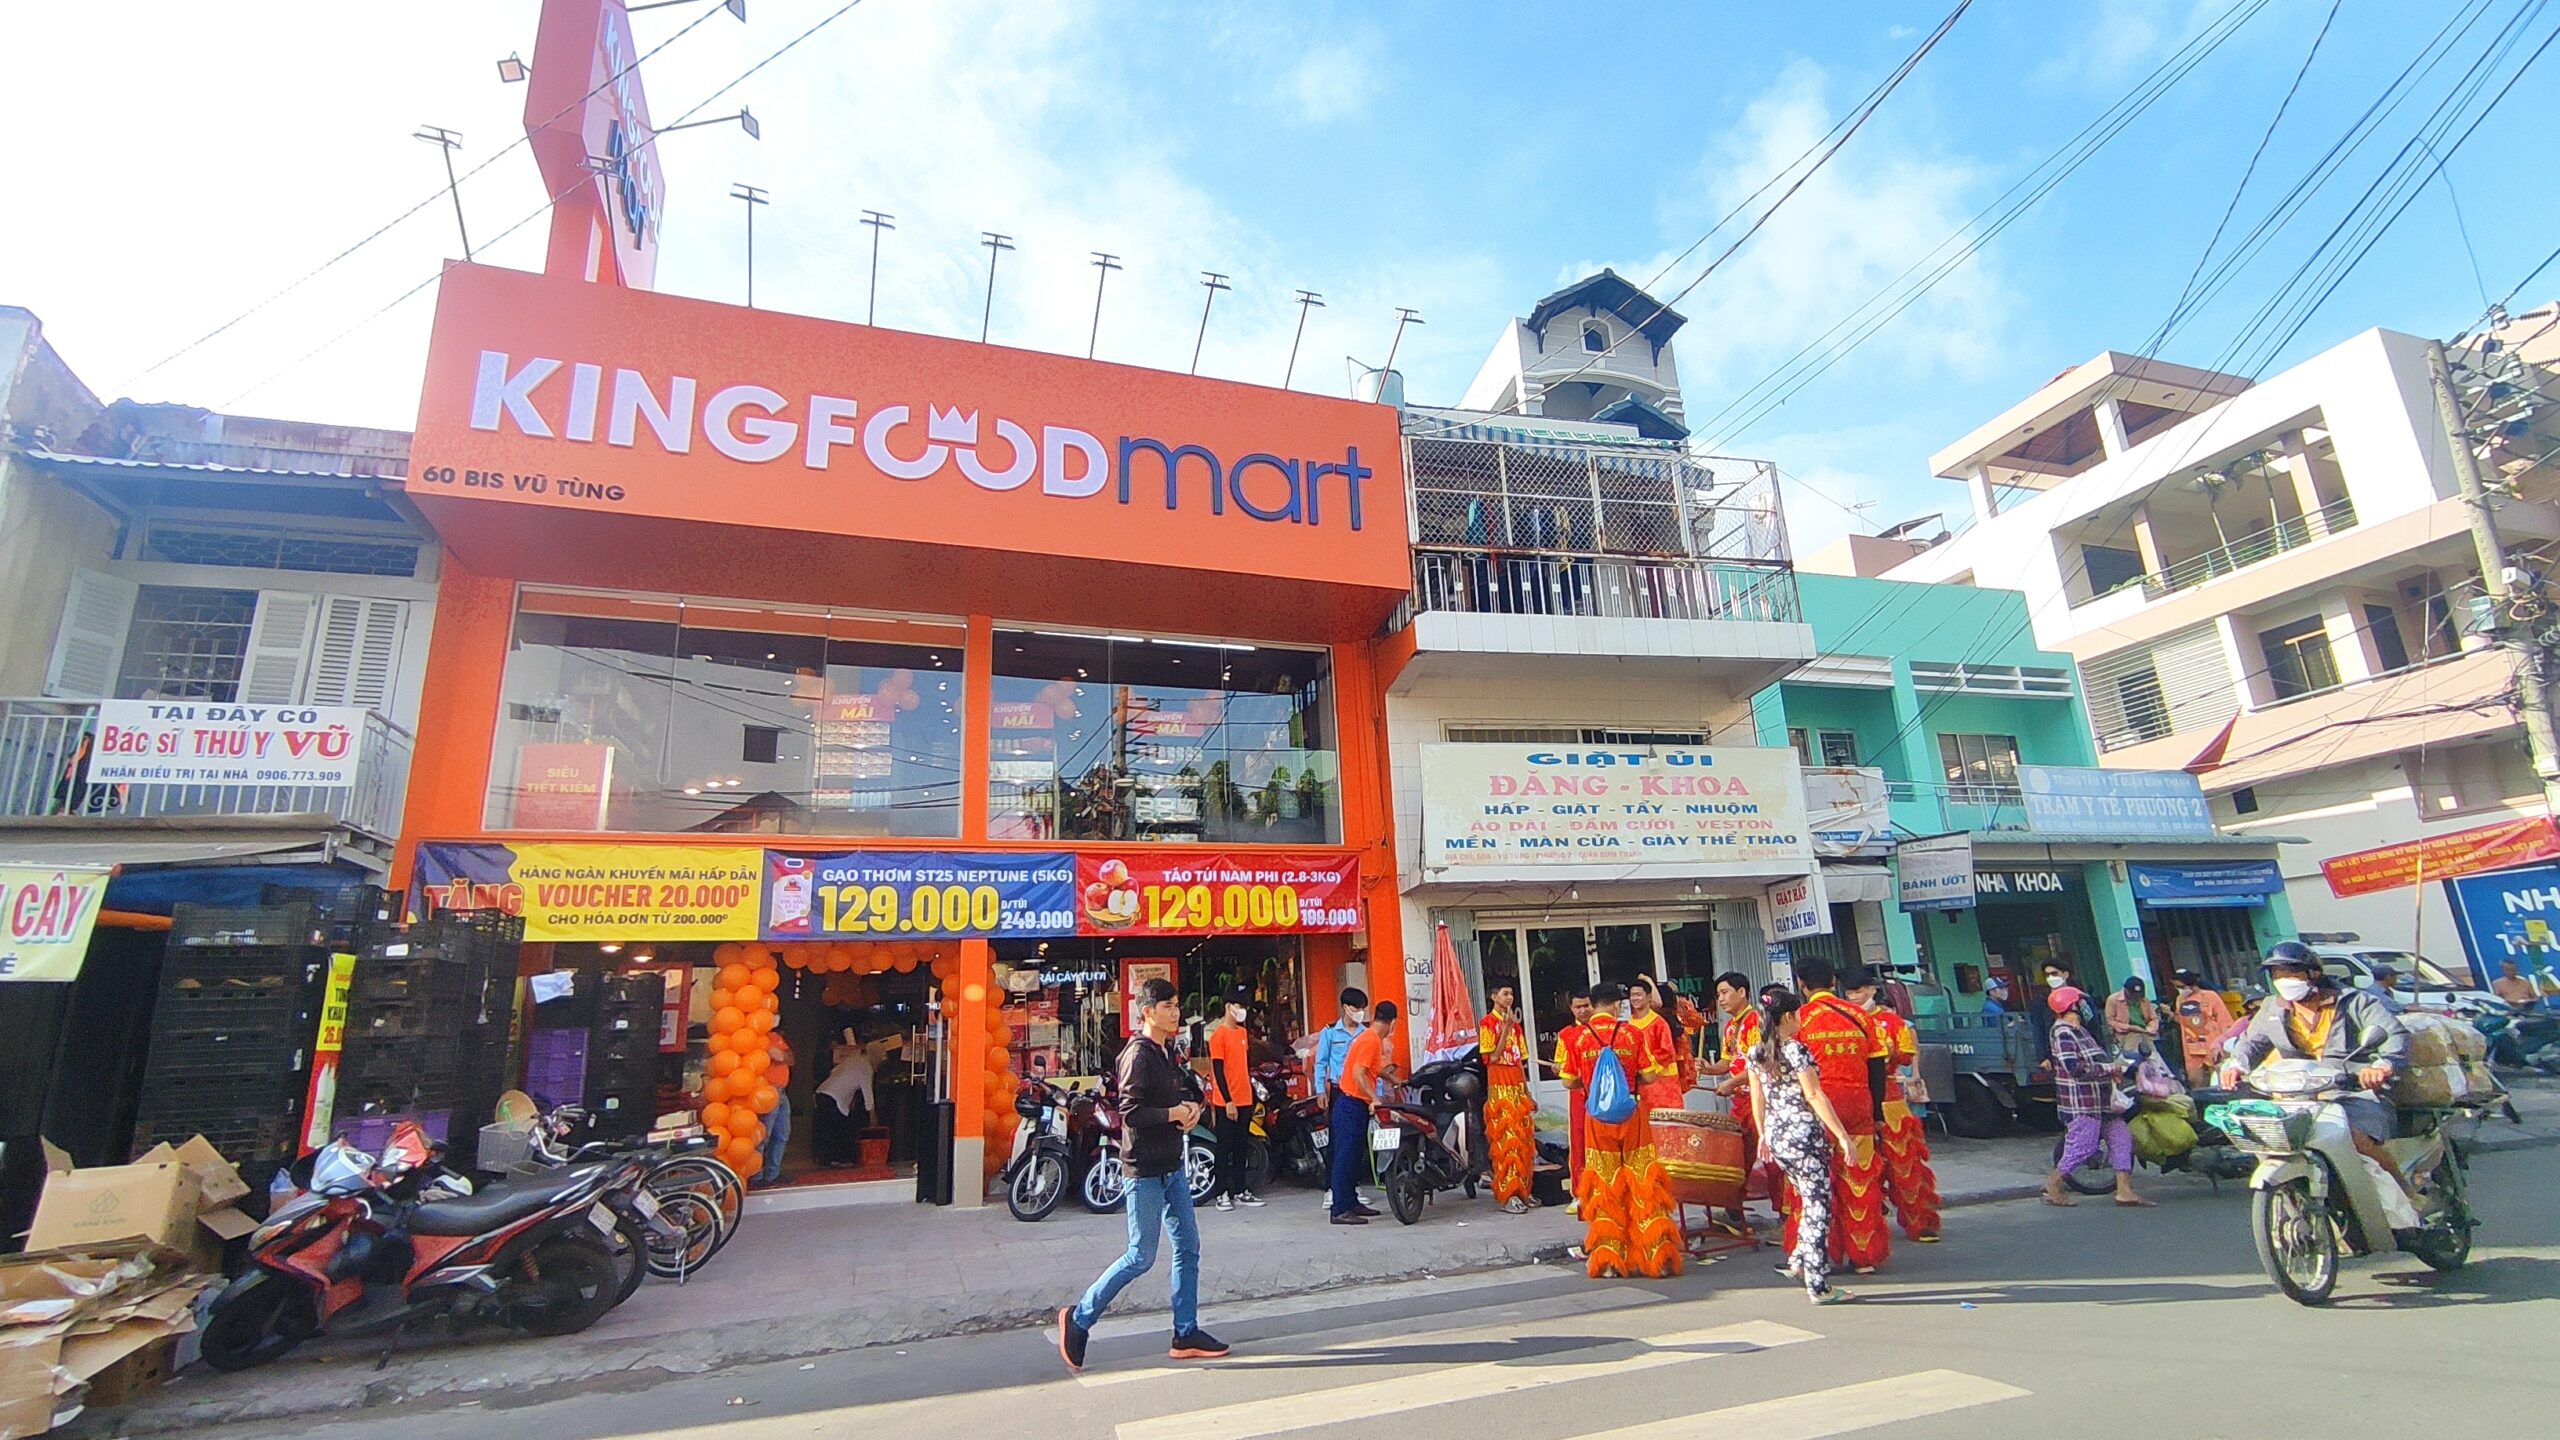 Kingfoodmart Vũ Tùng, Quận Bình Thạnh